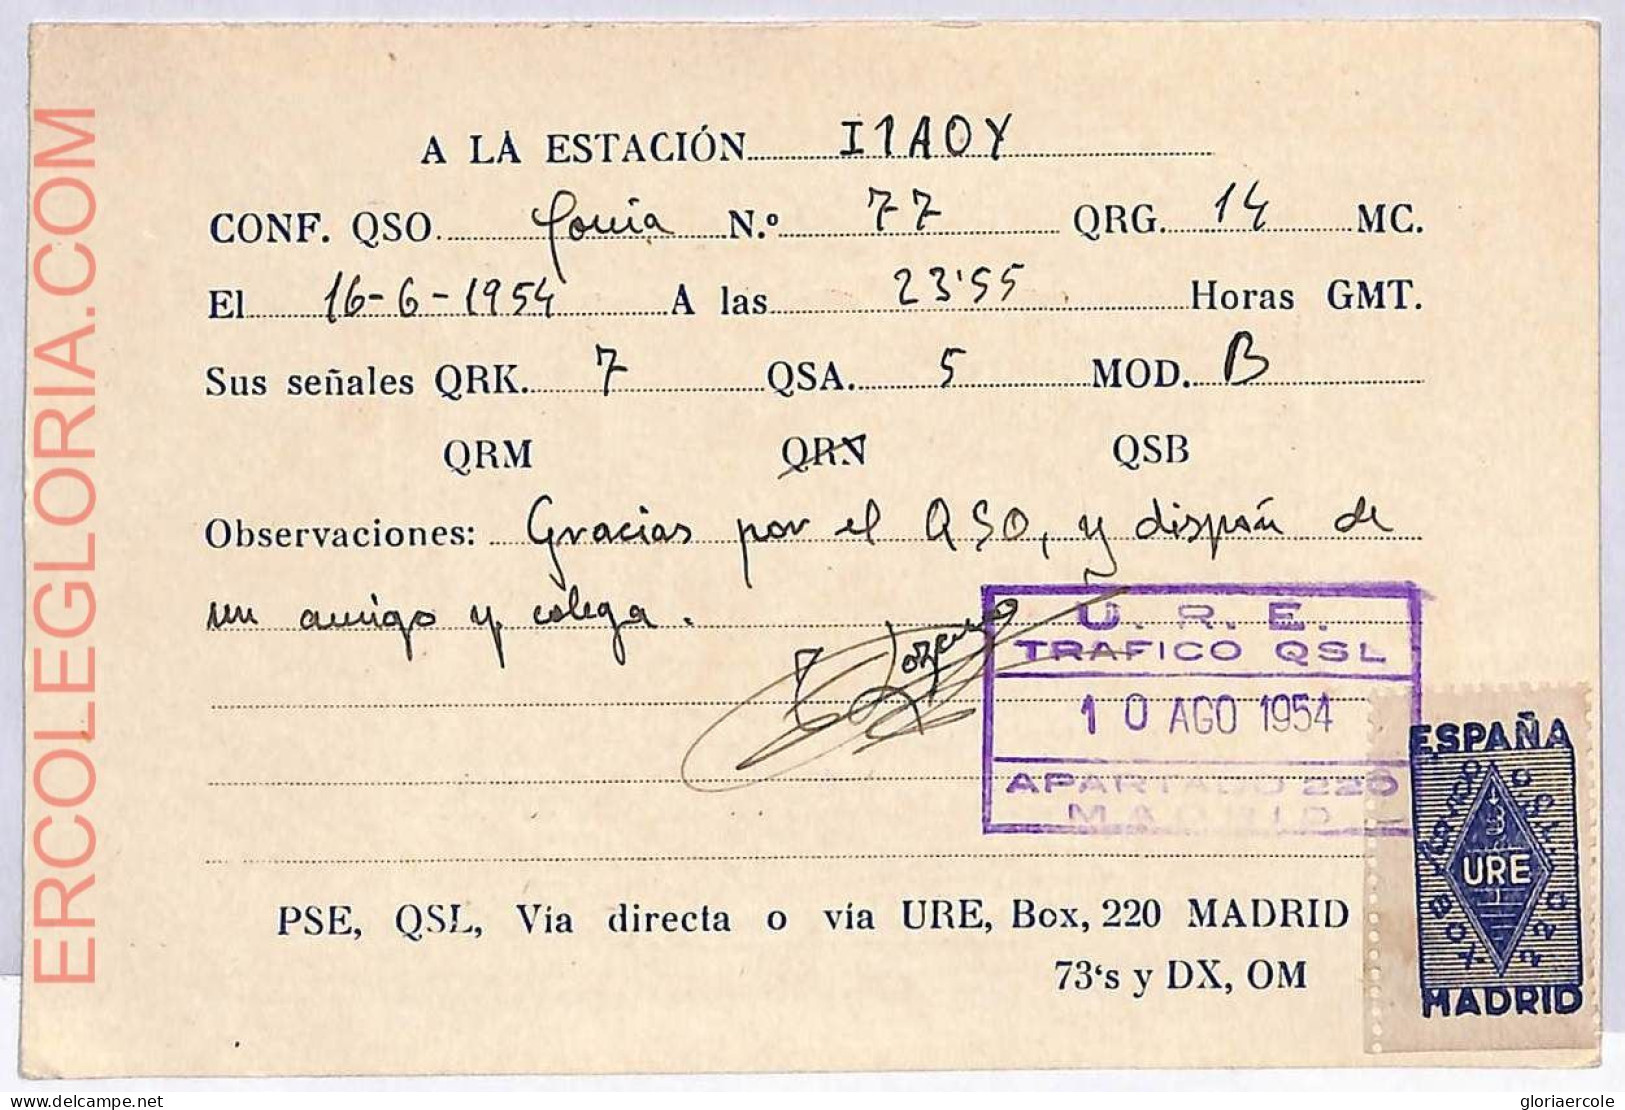 Ad9266 - SPAIN - RADIO FREQUENCY CARD  - Barcelona -  1954 - Radio